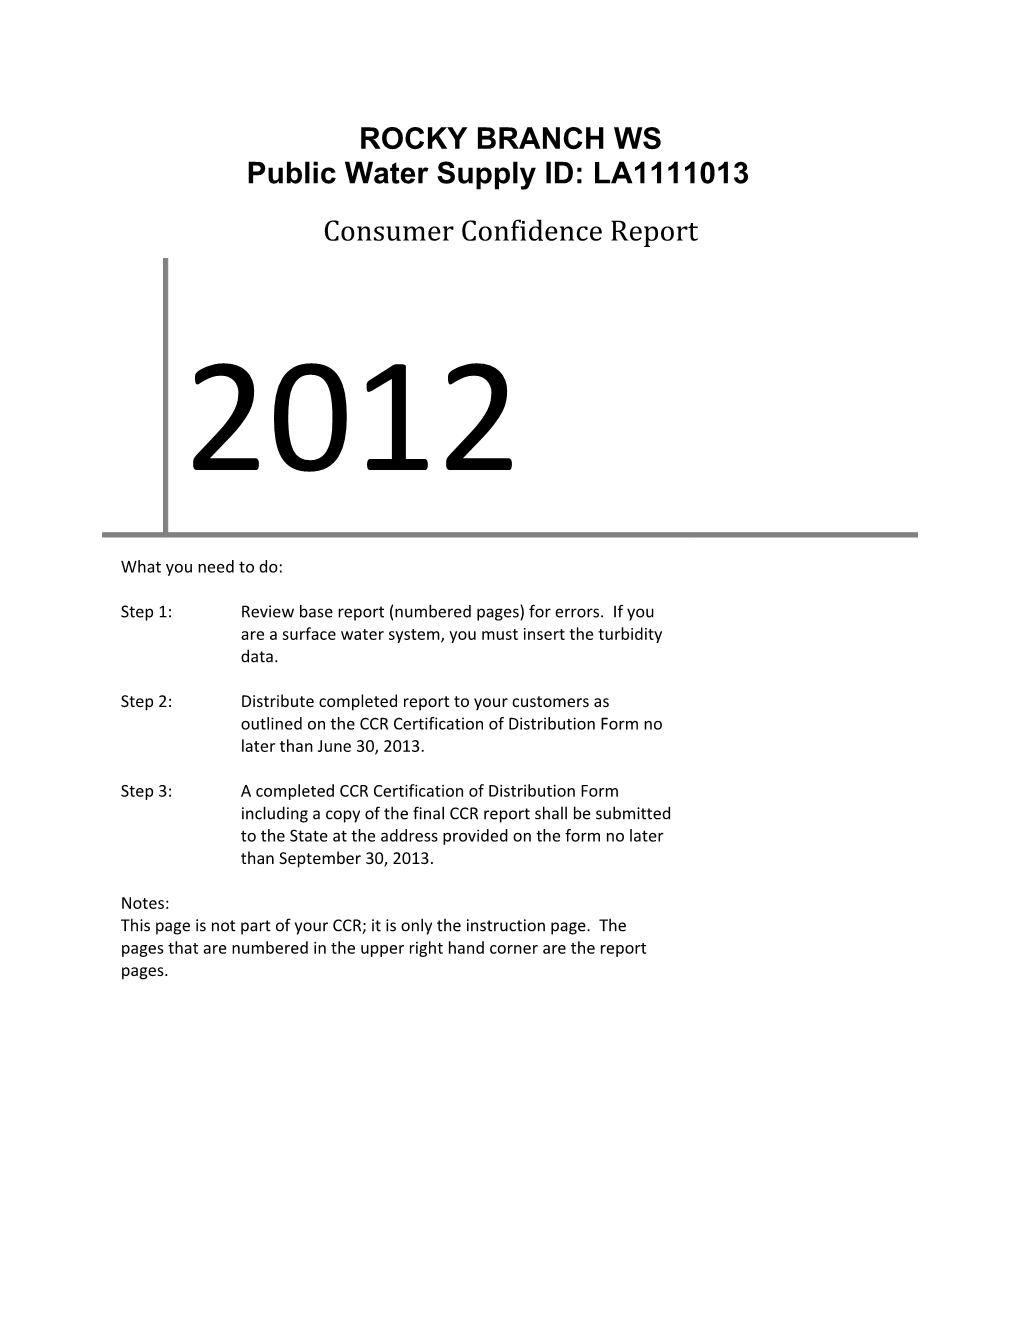 Public Water Supply ID: LA1111013